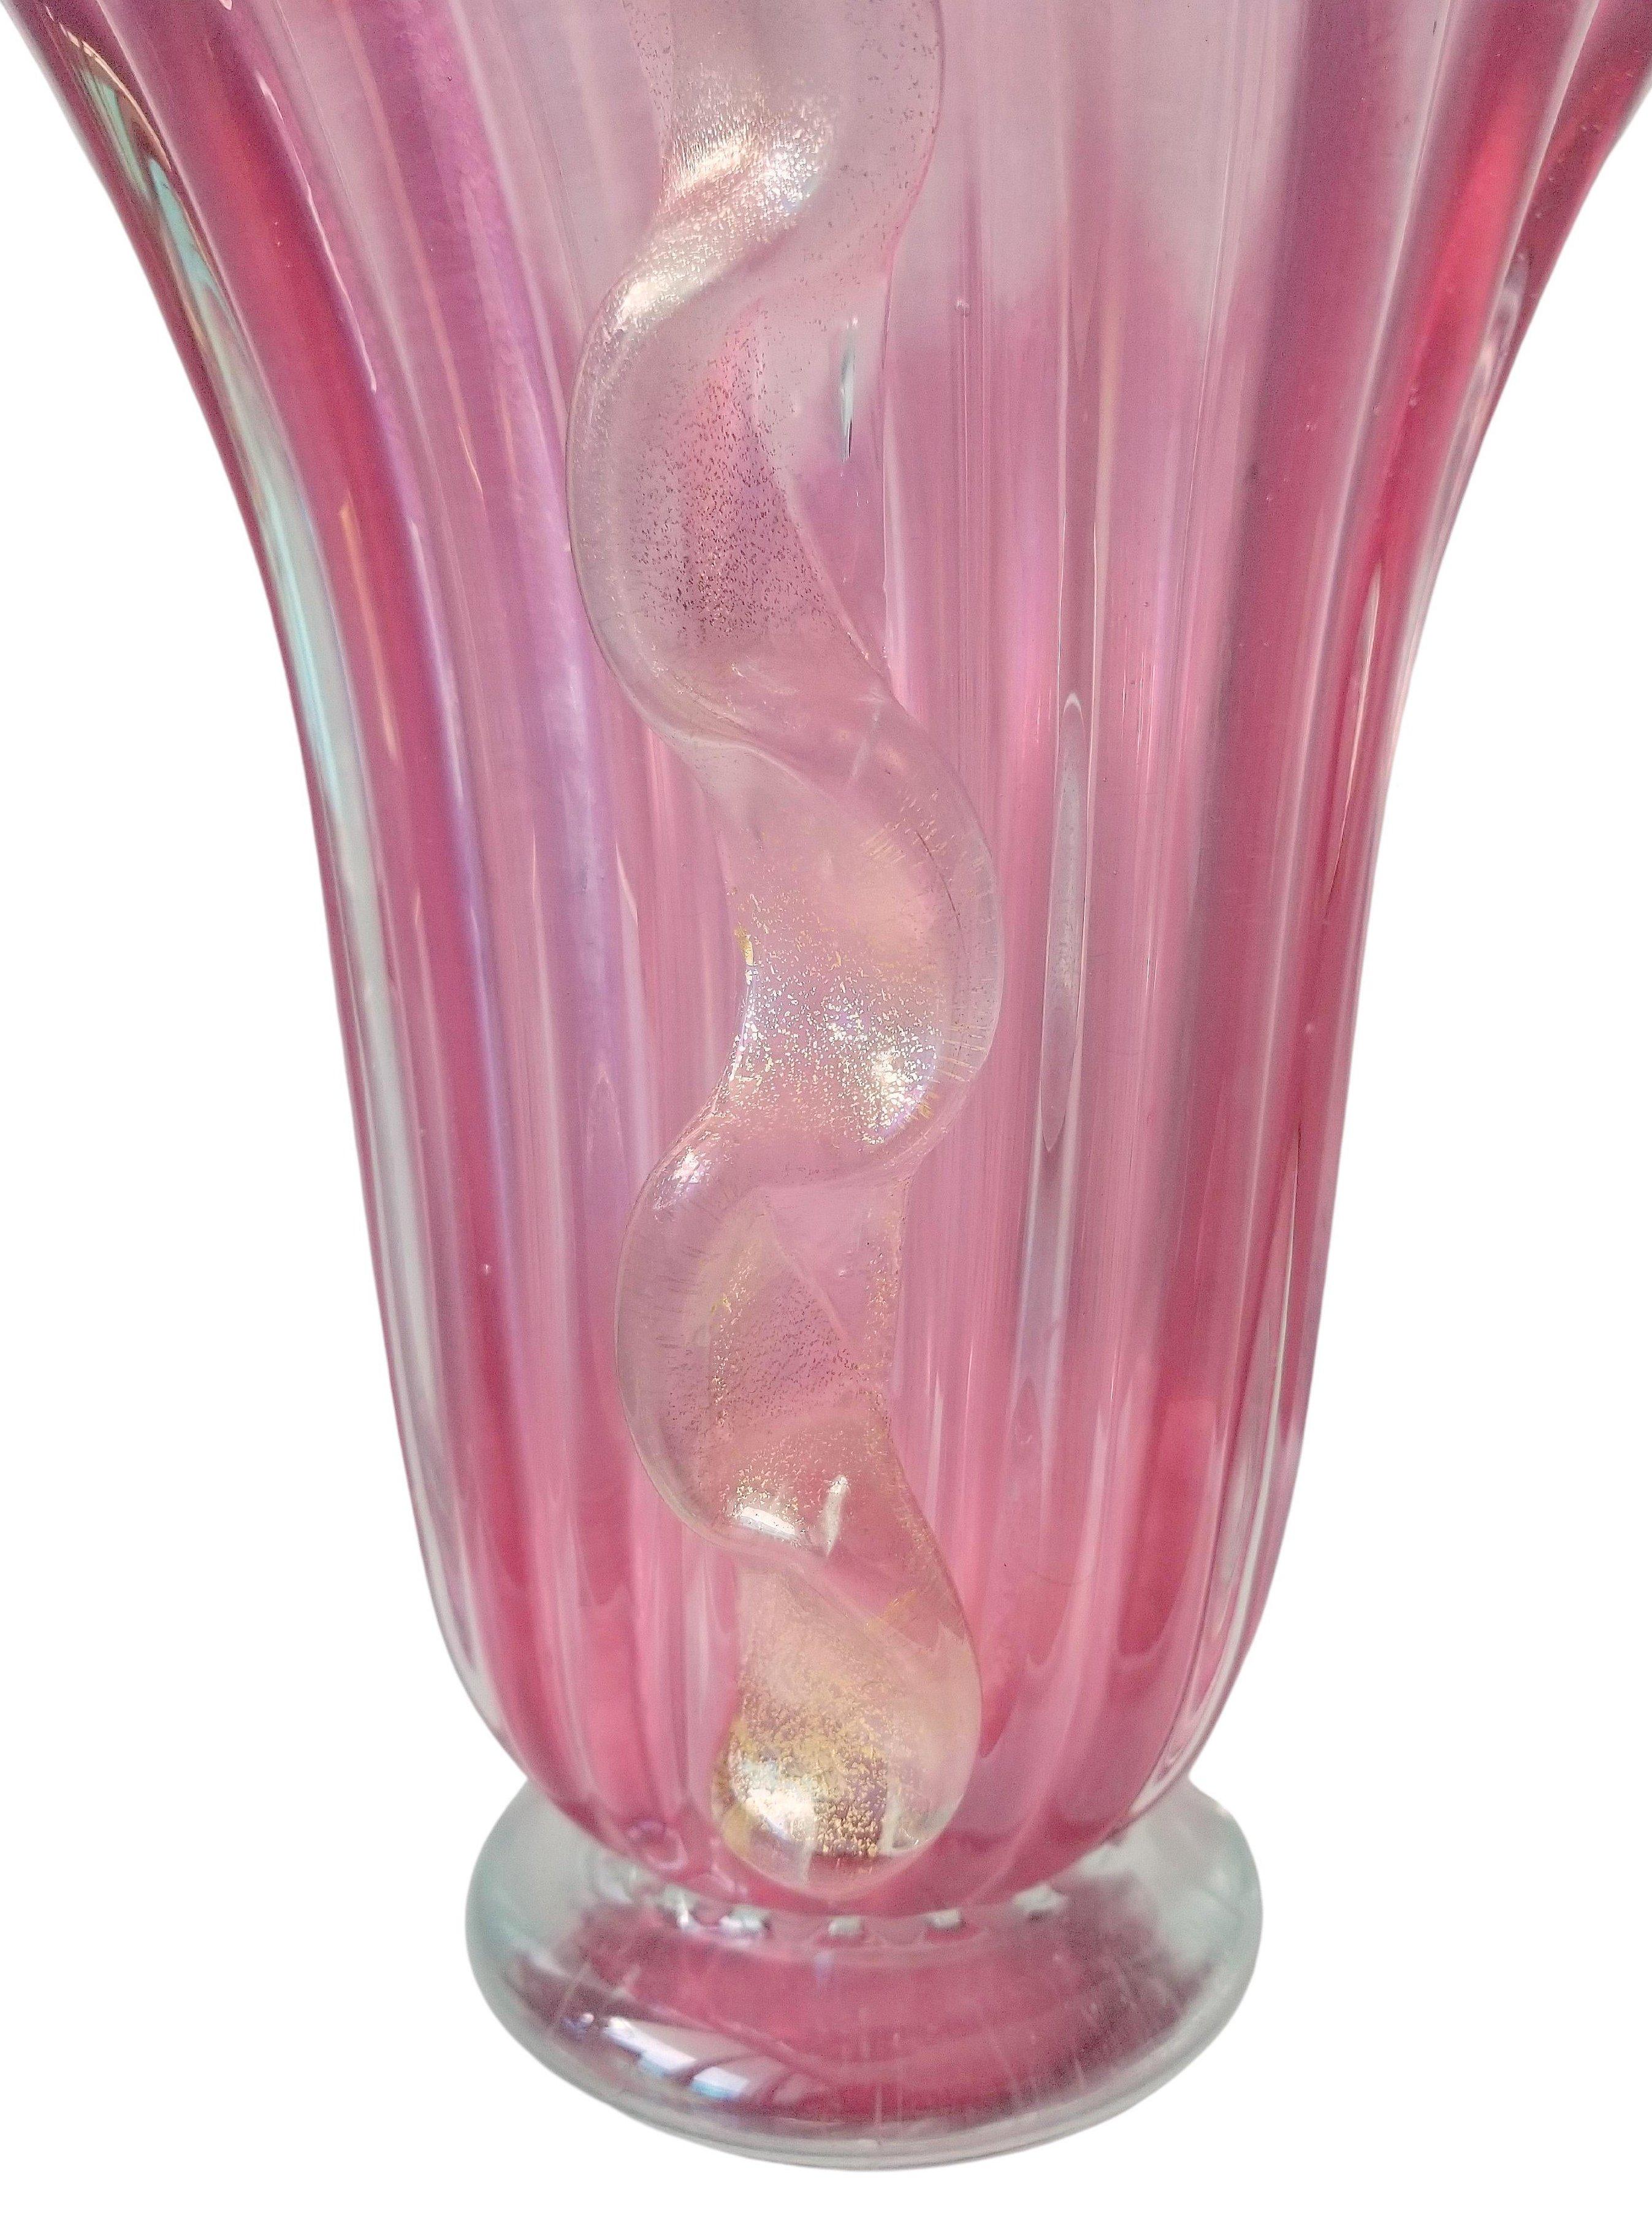 Große handgefertigte Vase aus Murano-Glas, transparent und rosa. Das Vintage-Gefäß wird durch seitliche Applikationen aus geformtem Glas mit einem charakteristischen Morise-Wellenmuster mit goldenem Aventurin bereichert. Der gerippte, campanaförmige